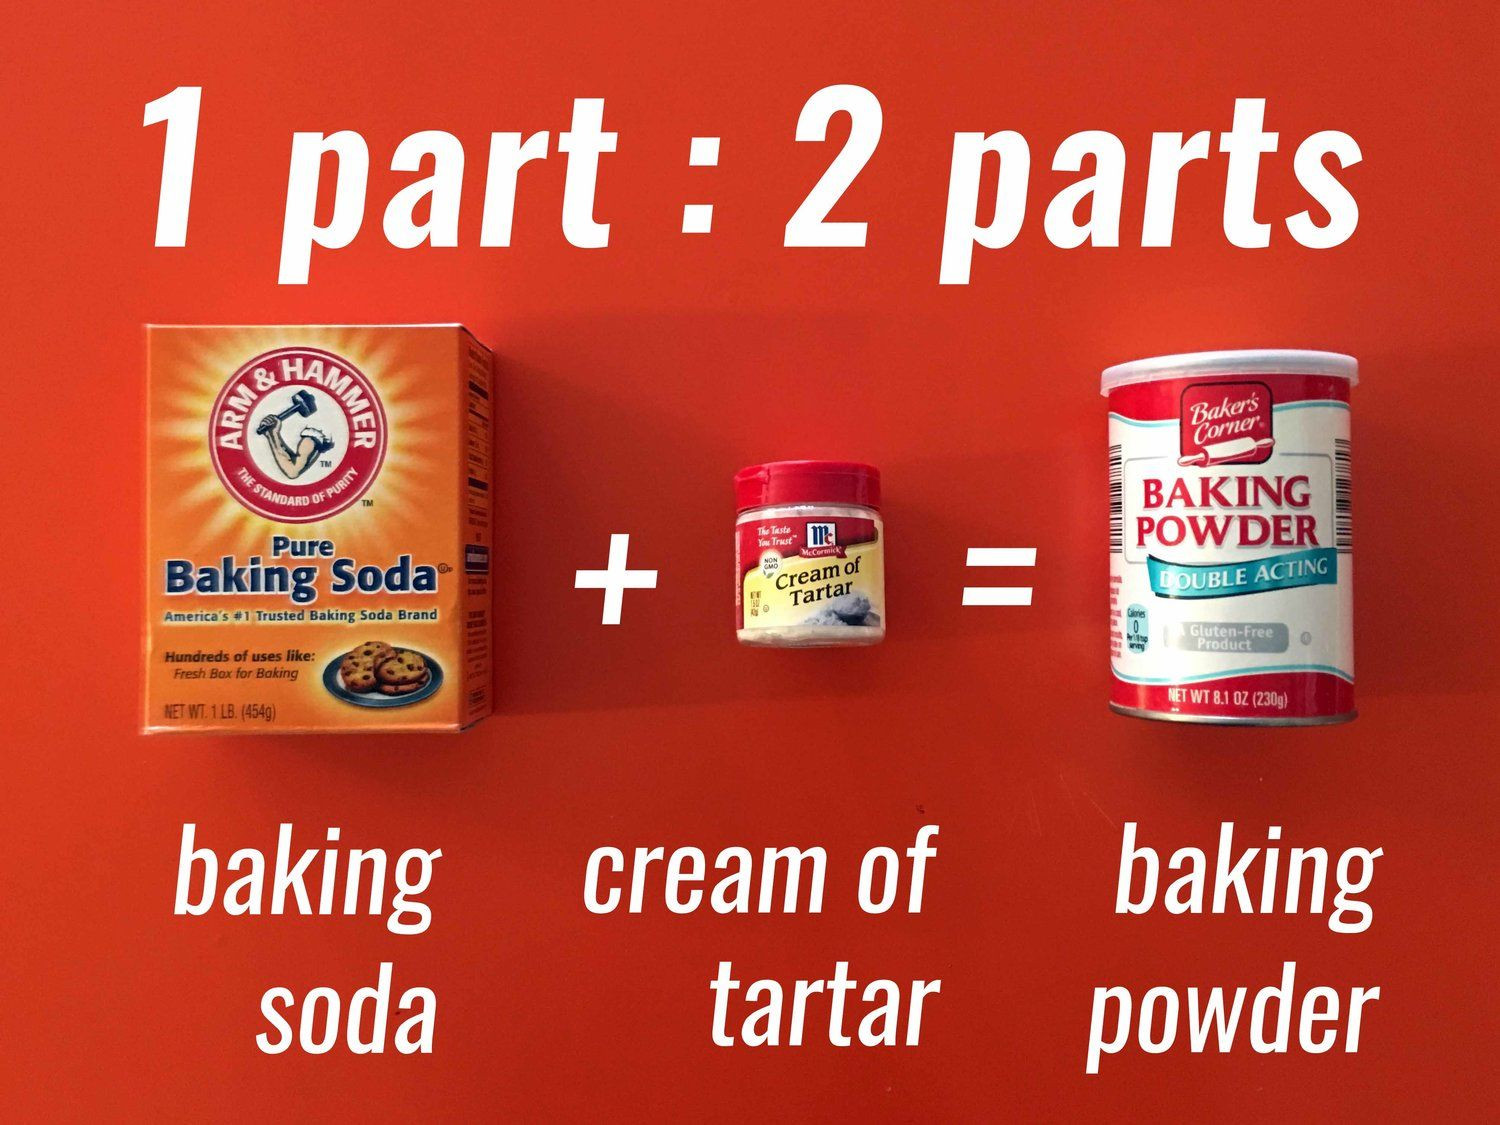 Low Carb Baking Powder
 DIY Low Carb Baking Powder Recipe Ingre nts